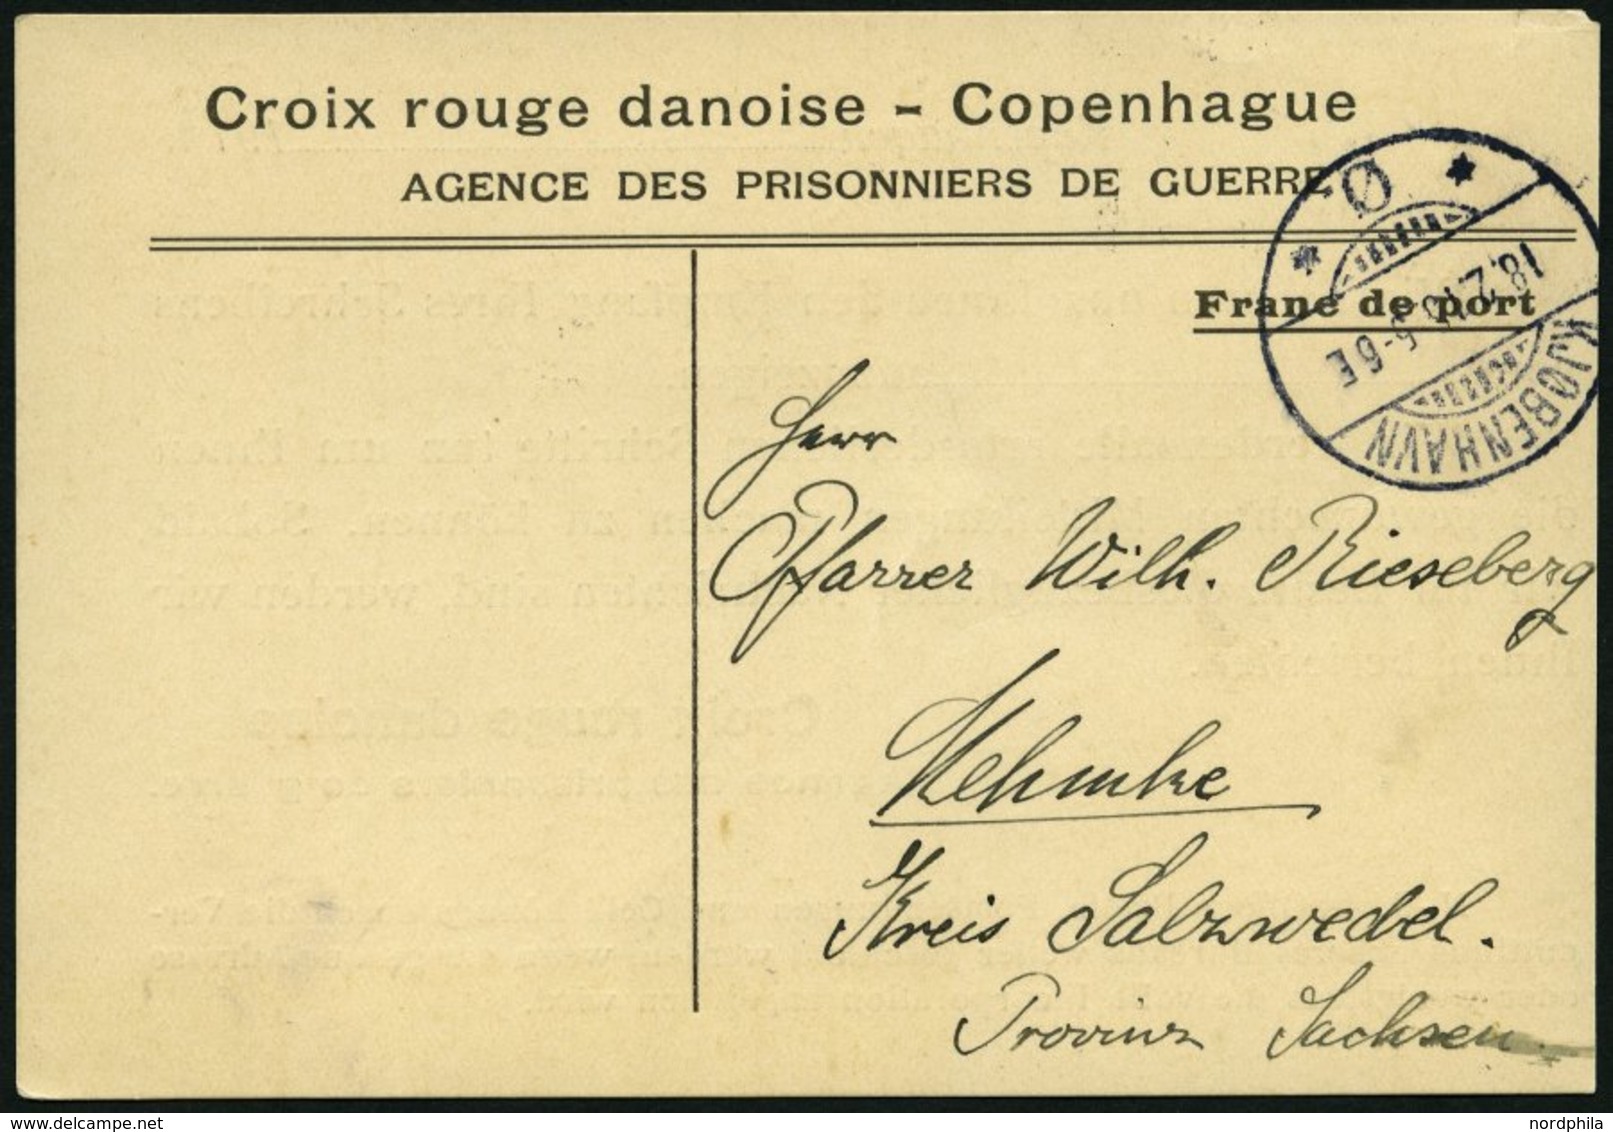 DÄNEMARK 1916, Antwortkarte Des Dänischen Roten Kreuzes An Die Angehörigen Eines Kriegsgefangenen In Sachsen, Feinst - Oblitérés